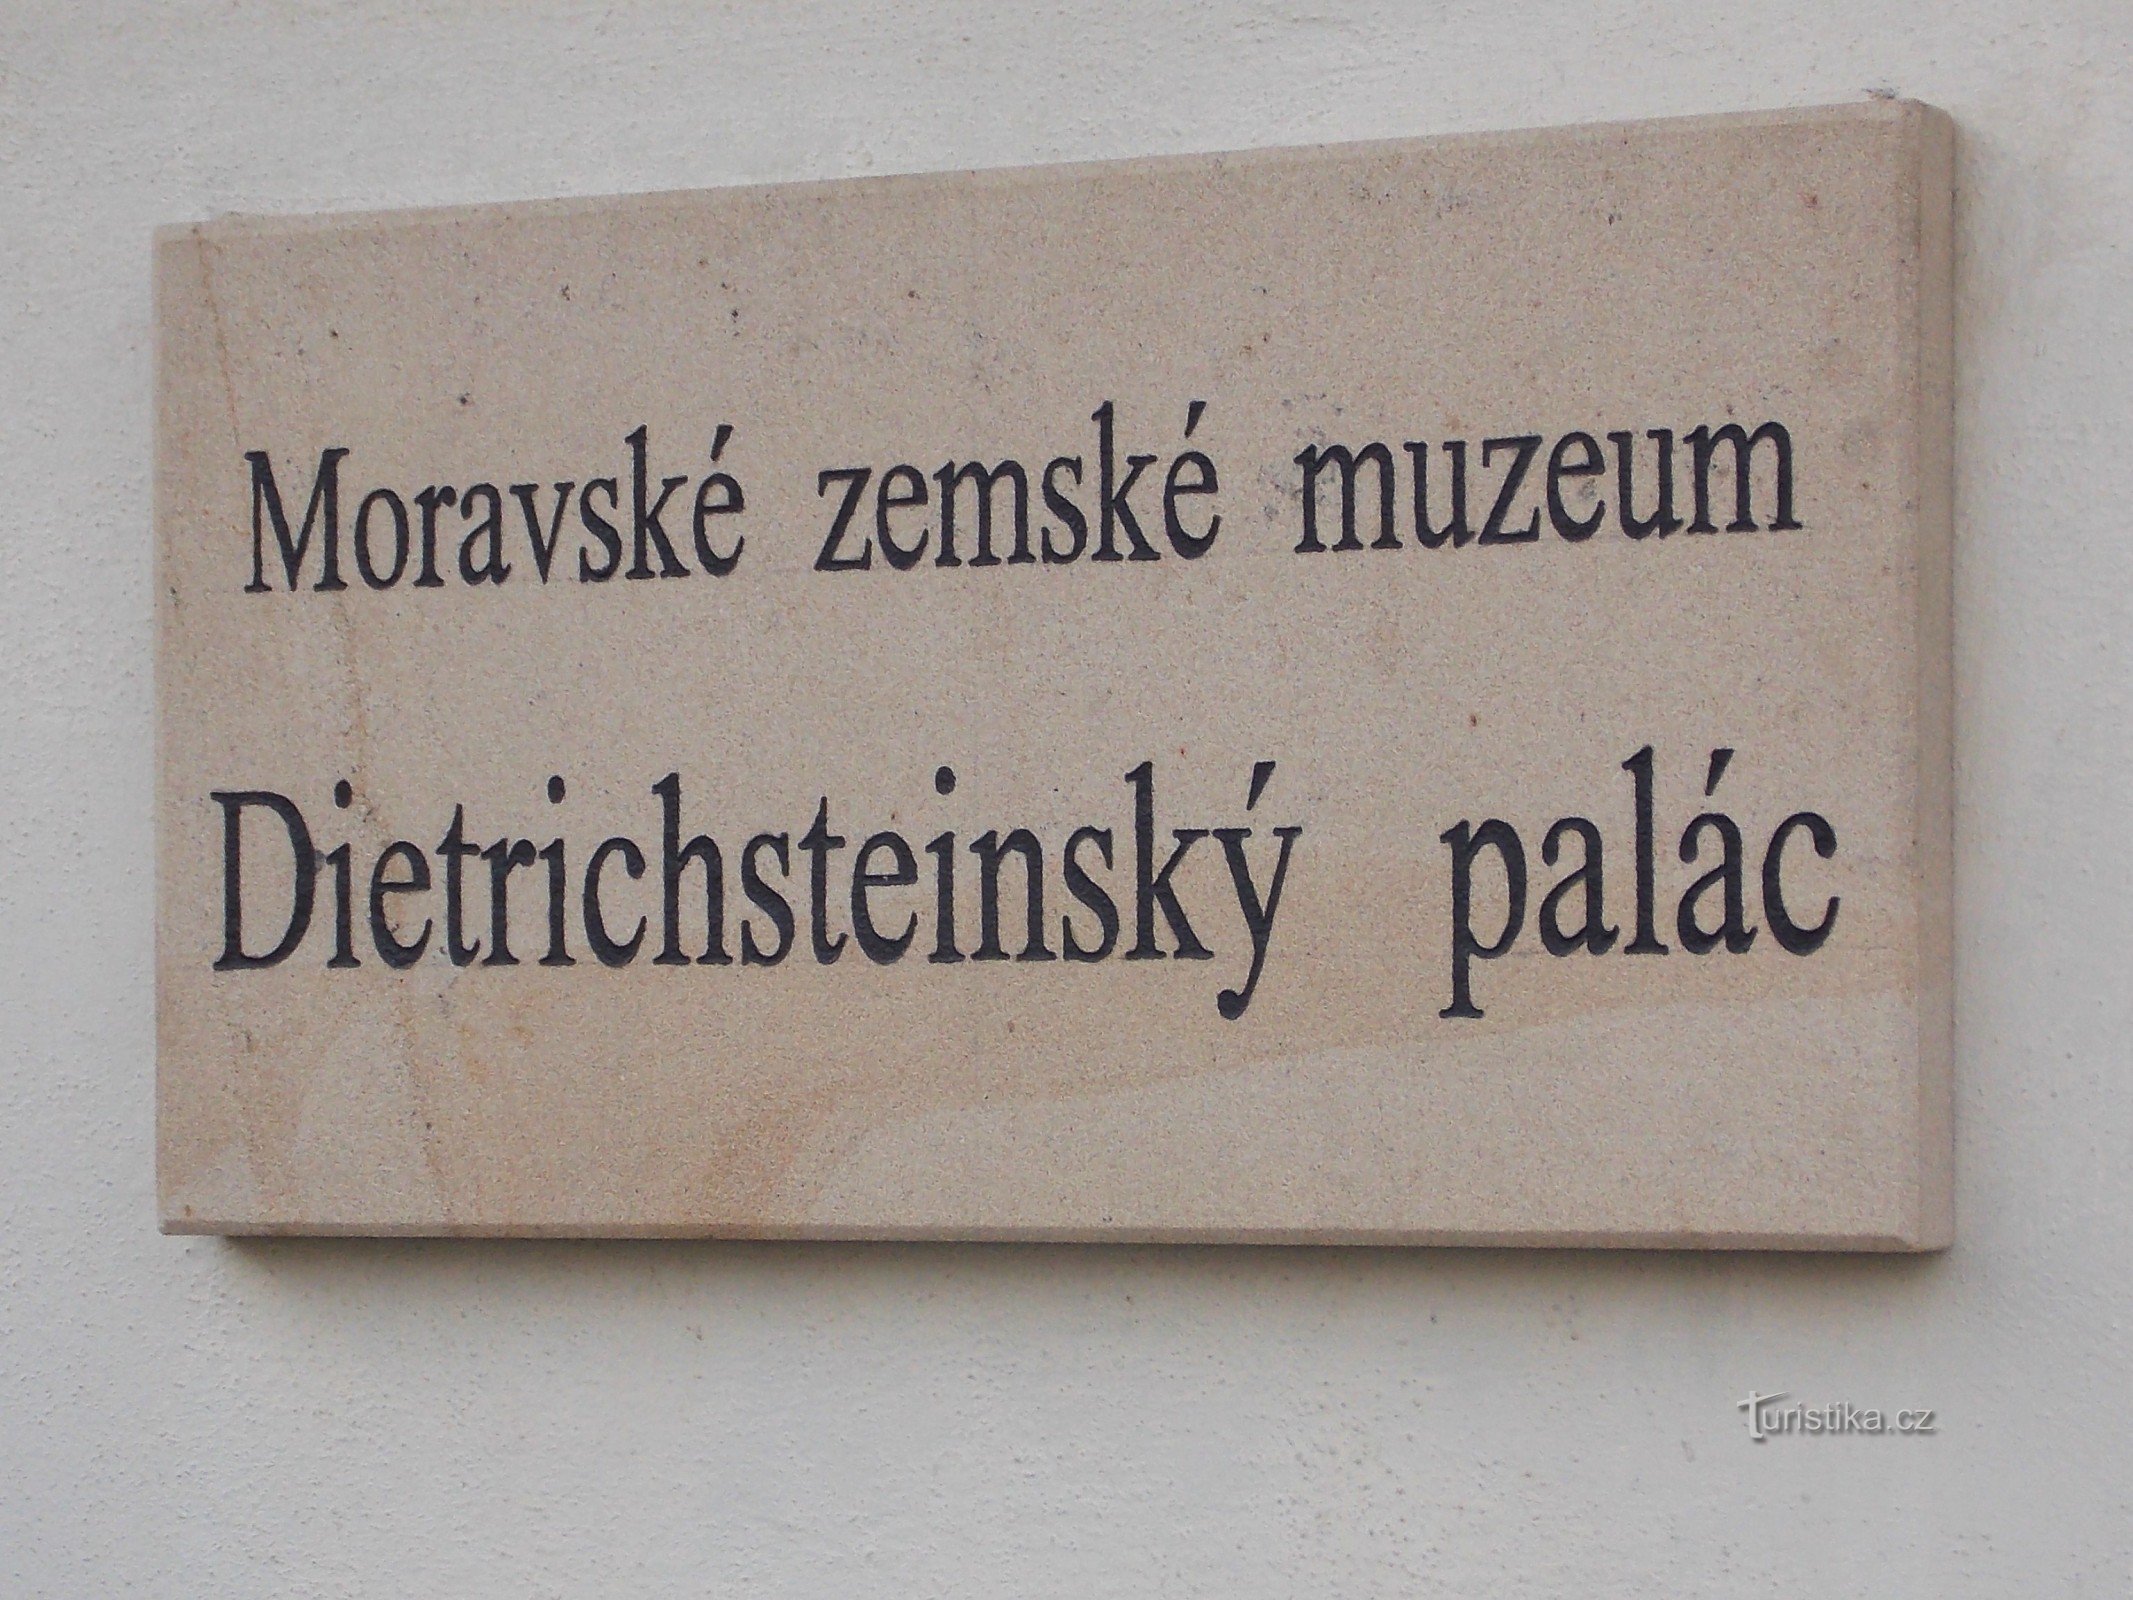 Museo Provincial de Moravia en Brno - Palacio Dietrichstein